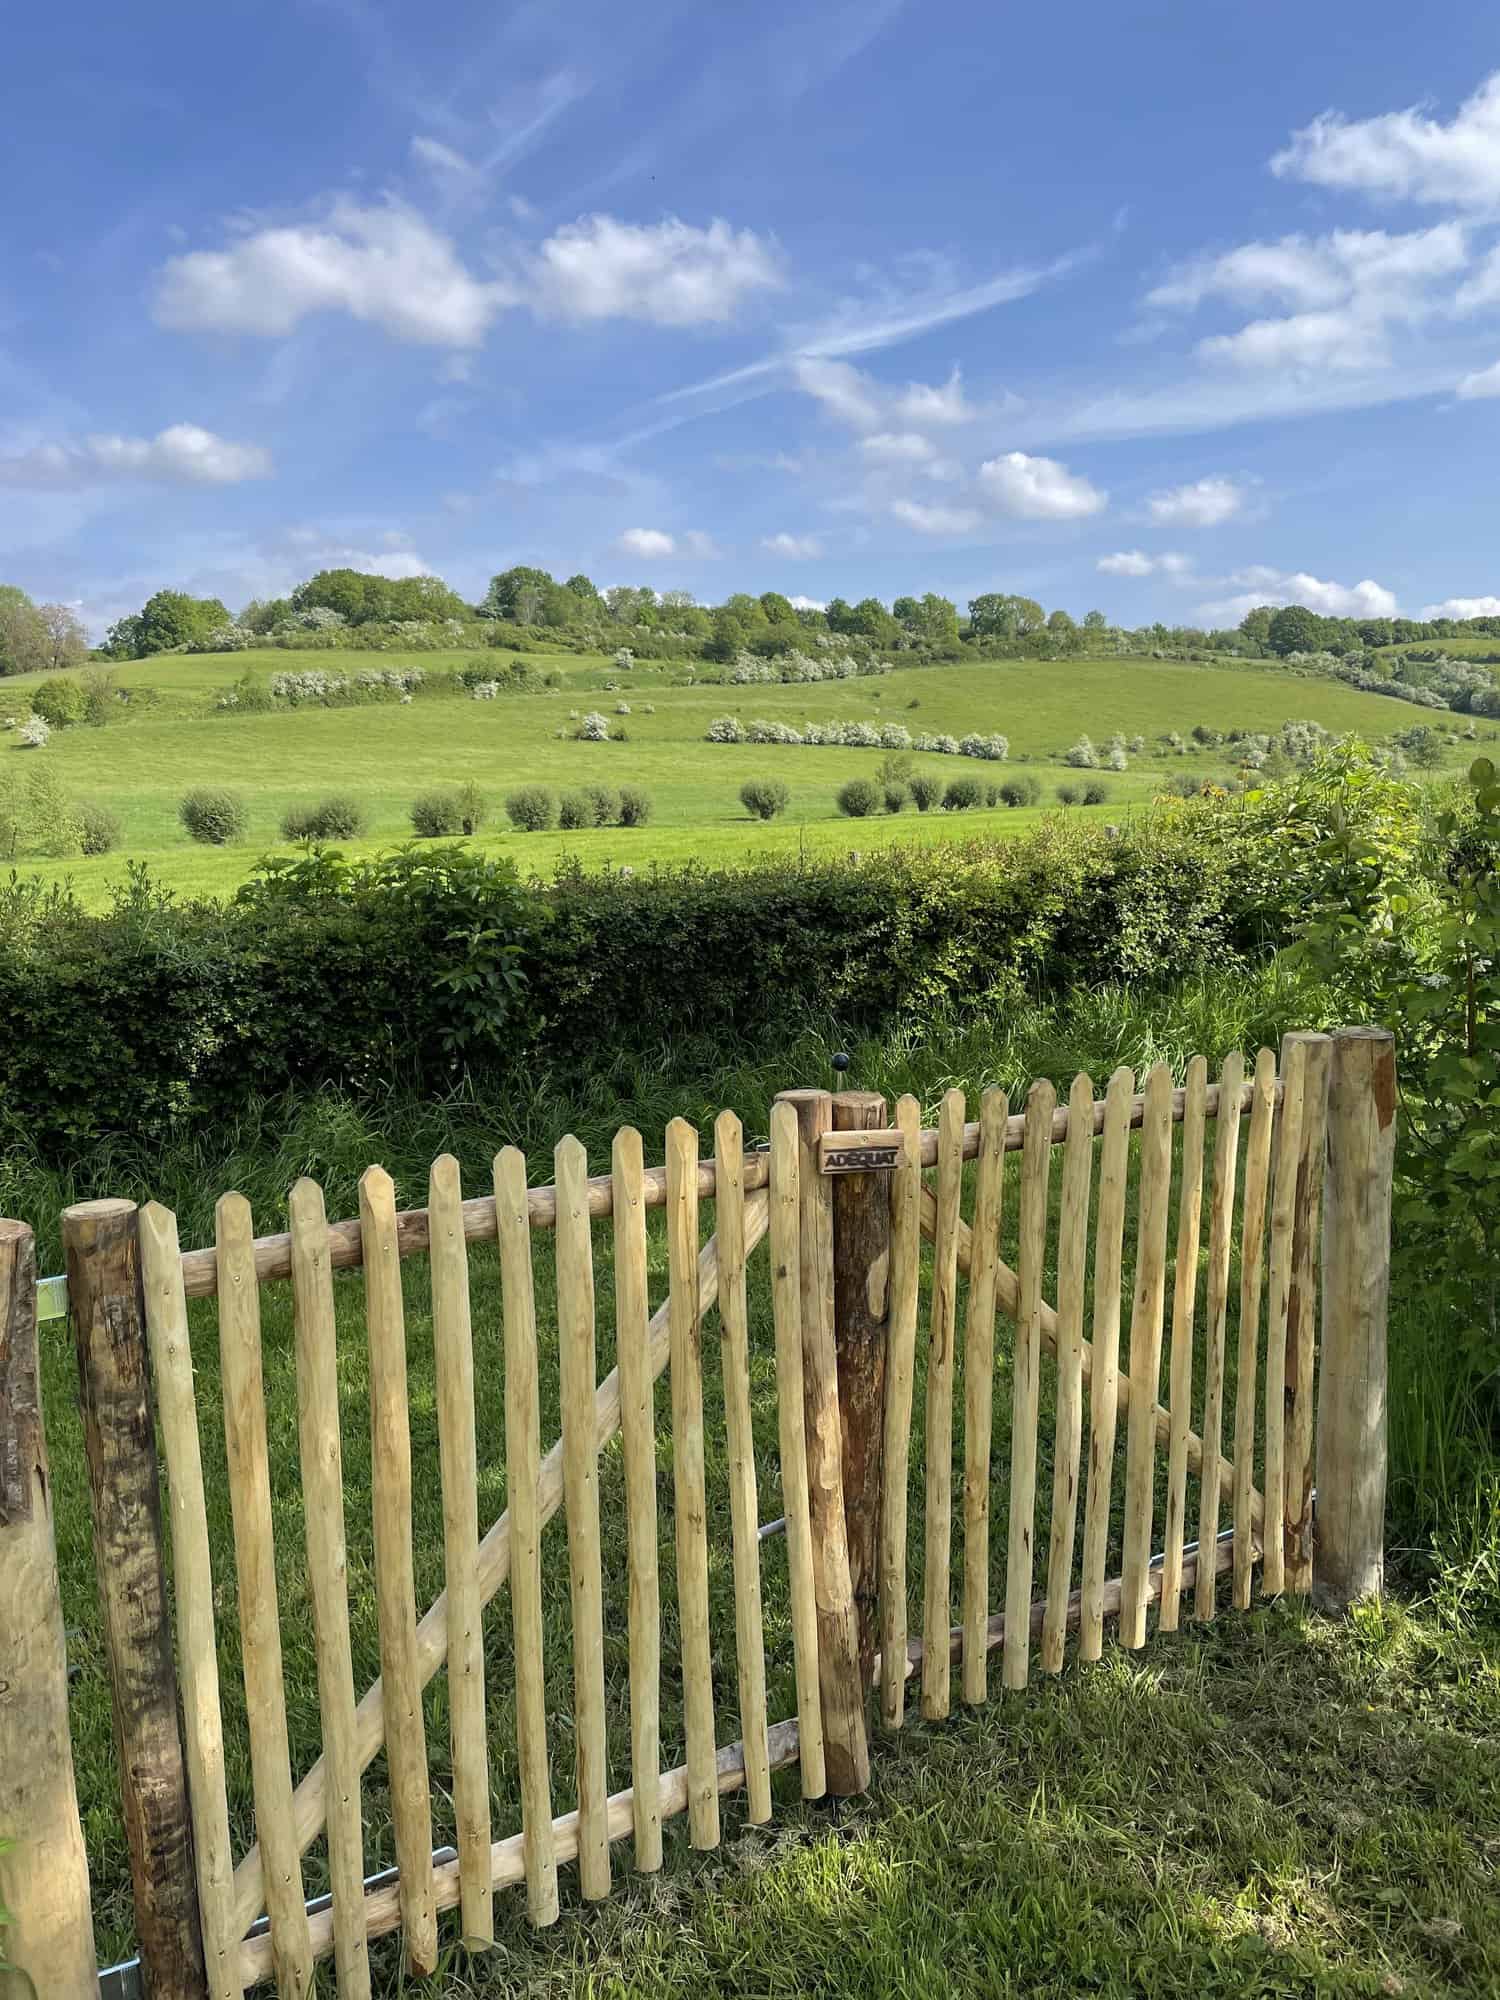 Dubbele franse rondhoutpoort van 100 cm breed en 100 cm hoog met een simpele sluiting aan de buitenkant. De foto is genomen vanaf de voorkant van de poort en je kijkt uit over een mooi groen landschap.